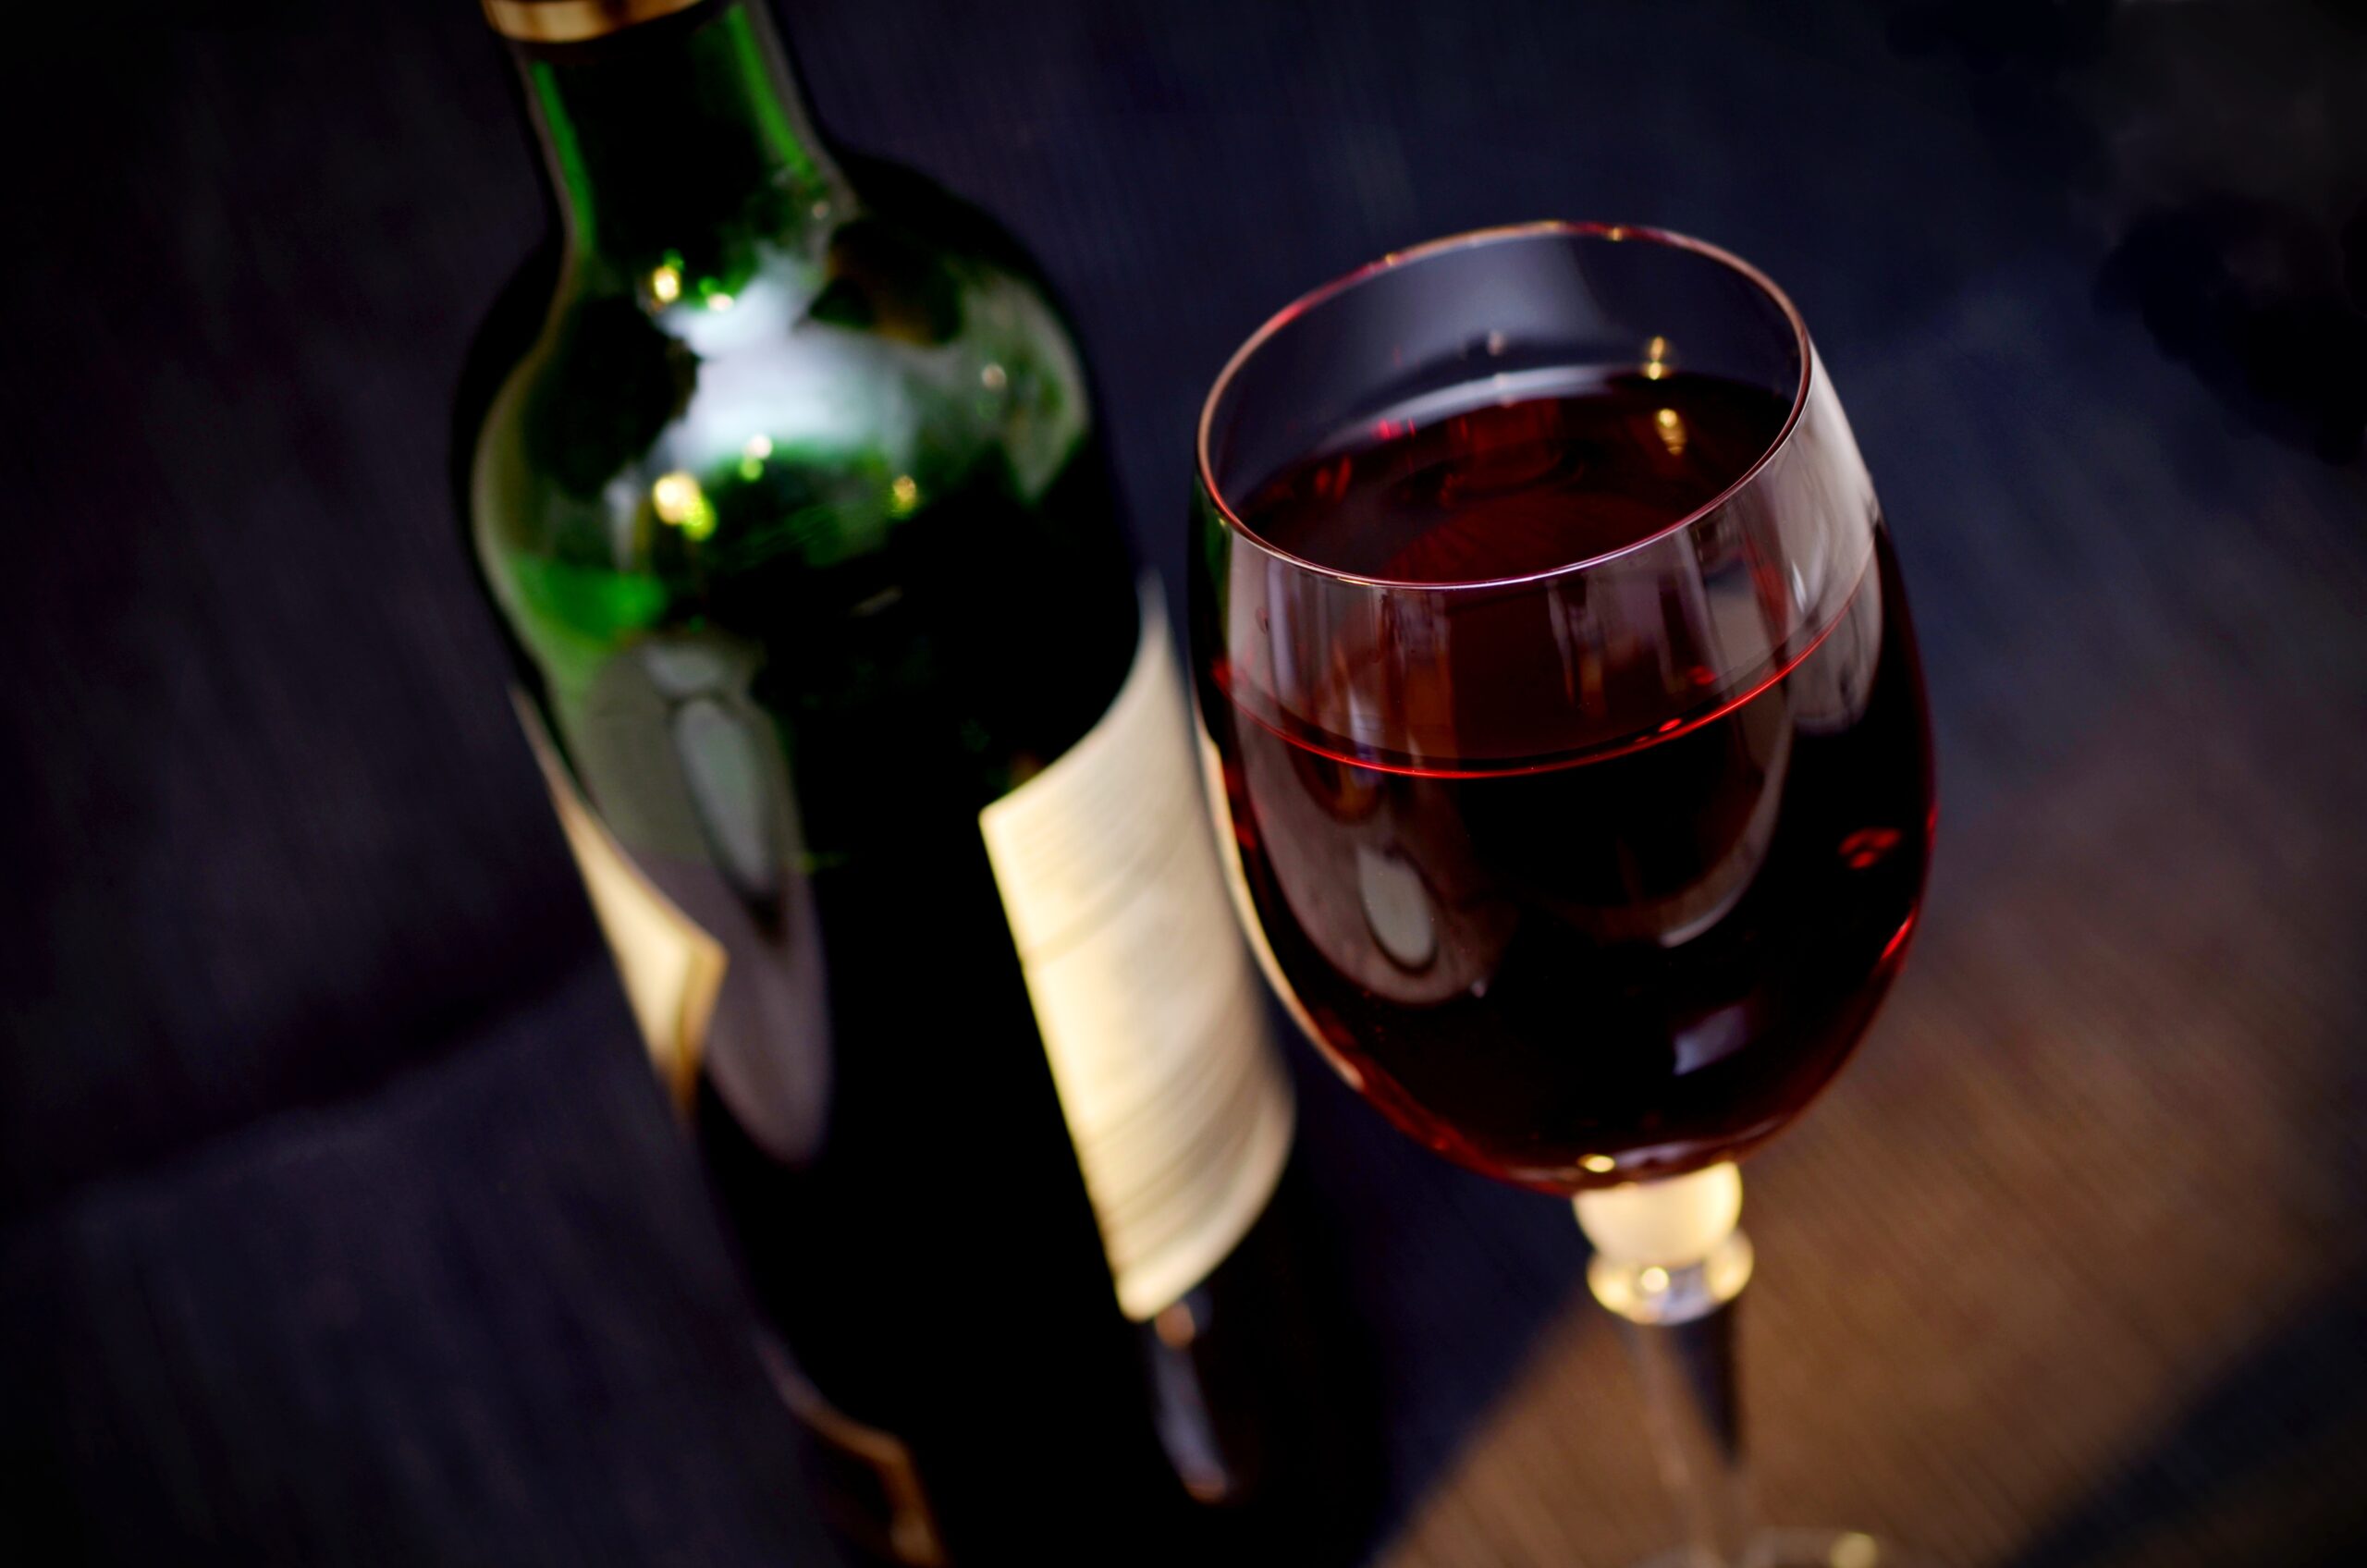 Entenda sobre como beber vinho pode ajudar a combater a Covid-19